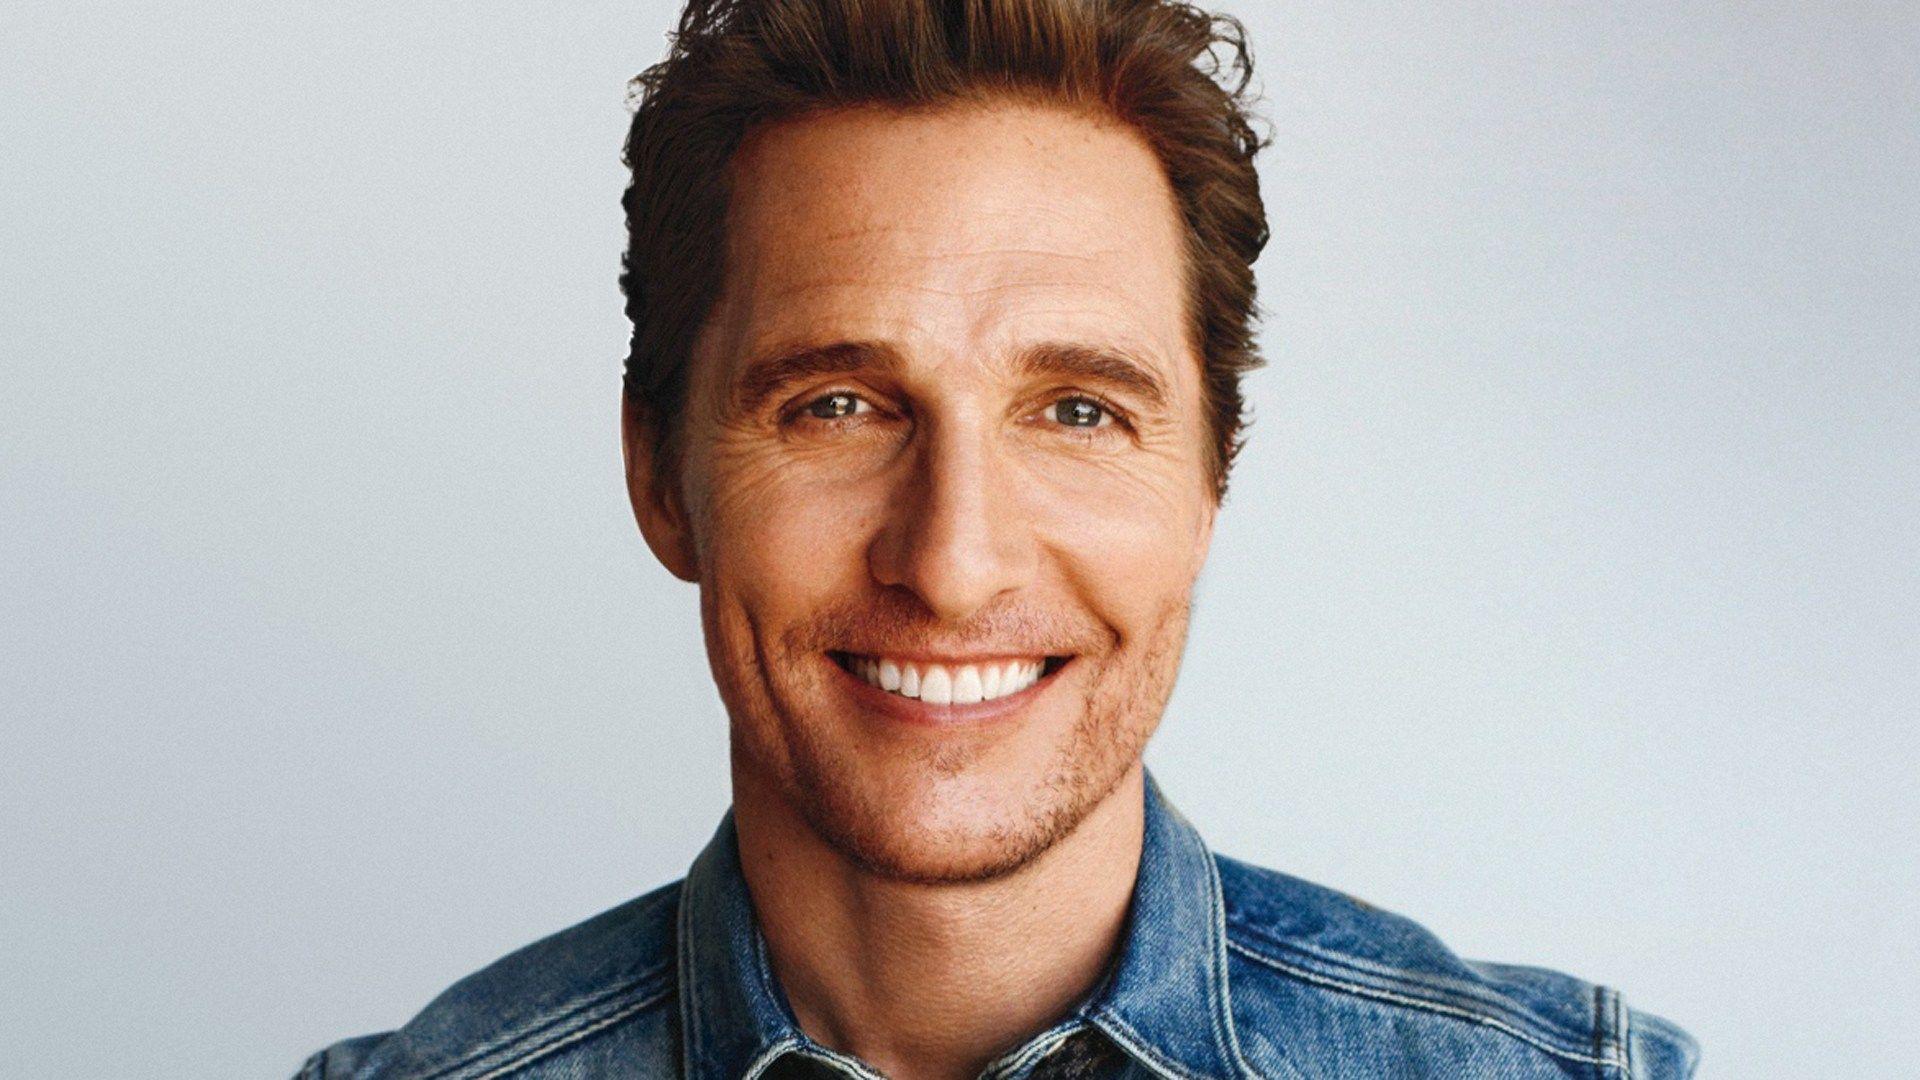 Matthew McConaughey stars in Bible inspired movie